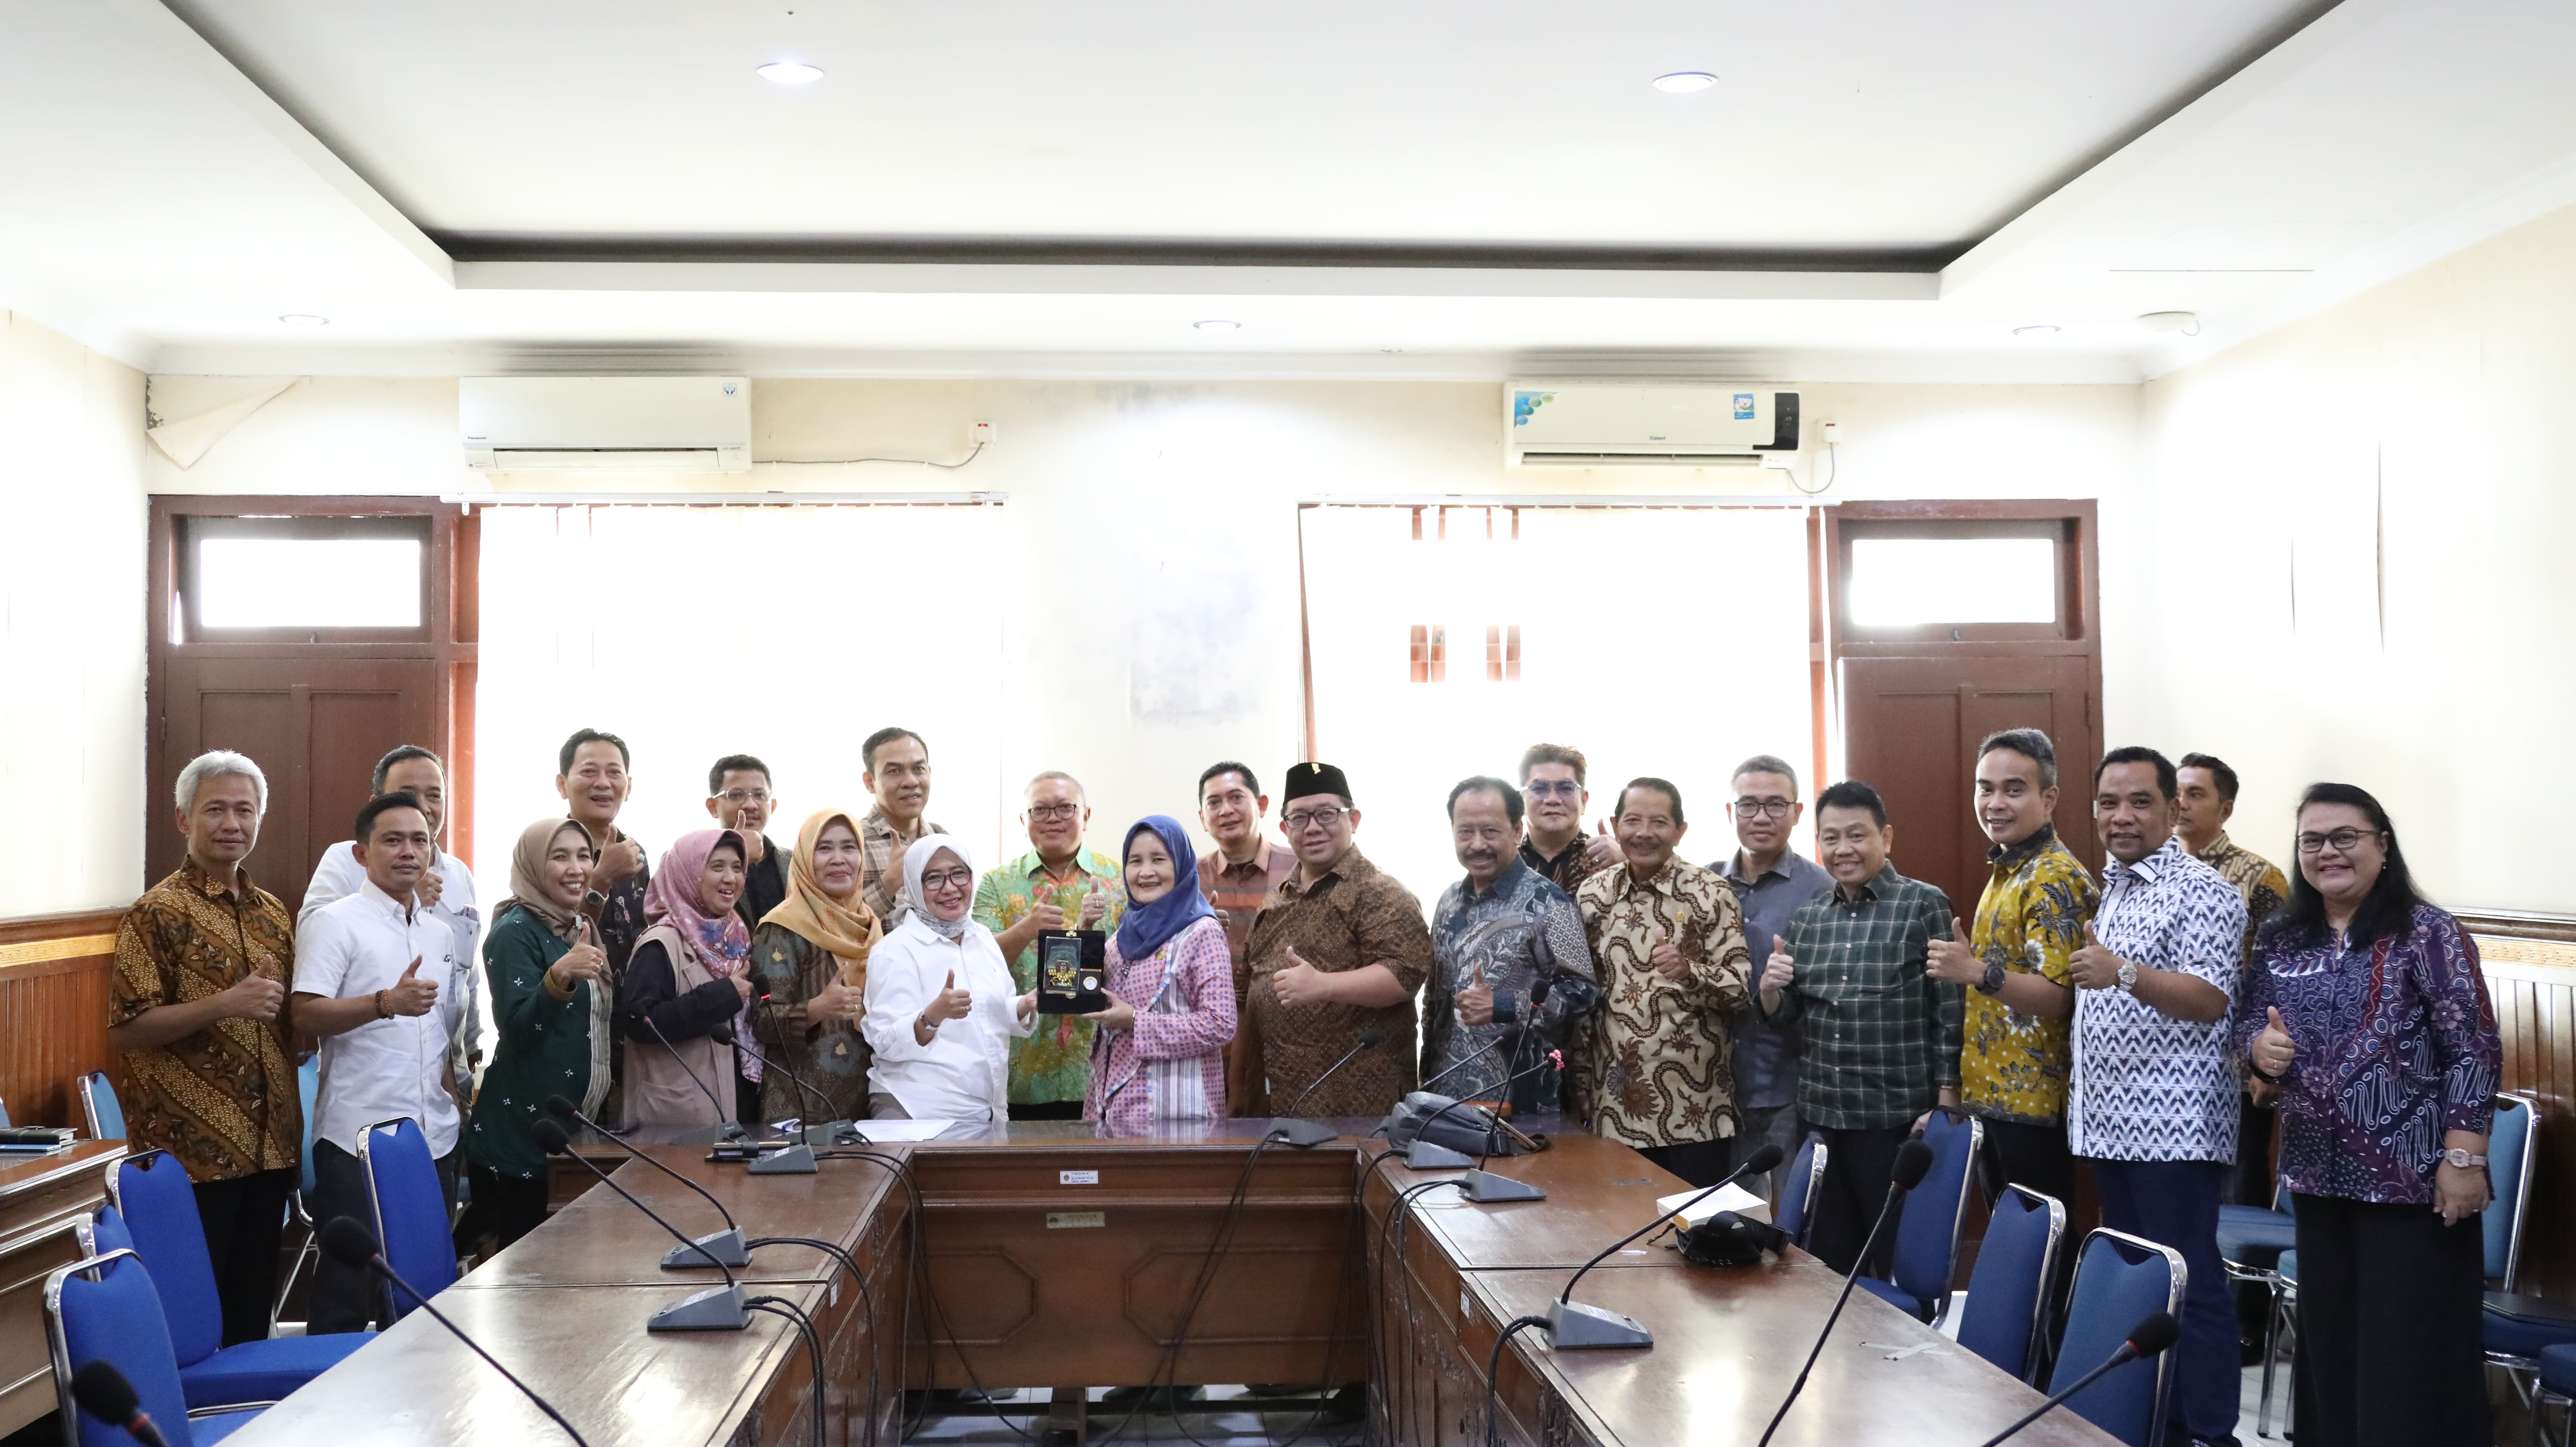 Wakil Ketua DPRD Provinsi Jawa Timur Anik Maslachah memimpin Kunjungan Kerja Badan Anggaran (Banggar) DPRD Provinsi Jawa Timur ke Dinas Pariwisata Daerah Istimewa Yogyakarta.